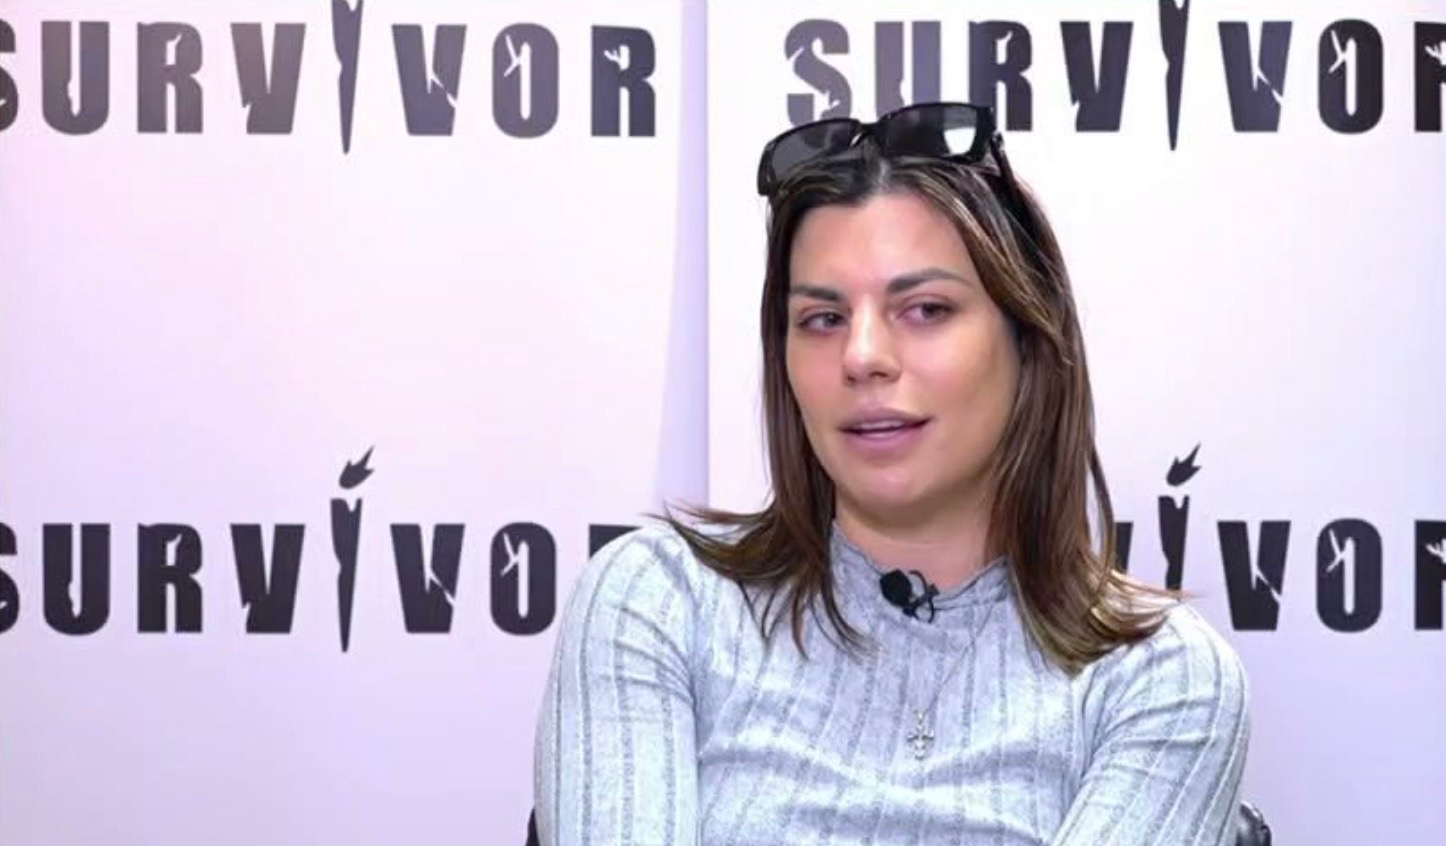 Σταυρούλα Χρυσαειδή για Survivor: Οι παραβάσεις θα είναι από τα πράγματα που θα ψάξω